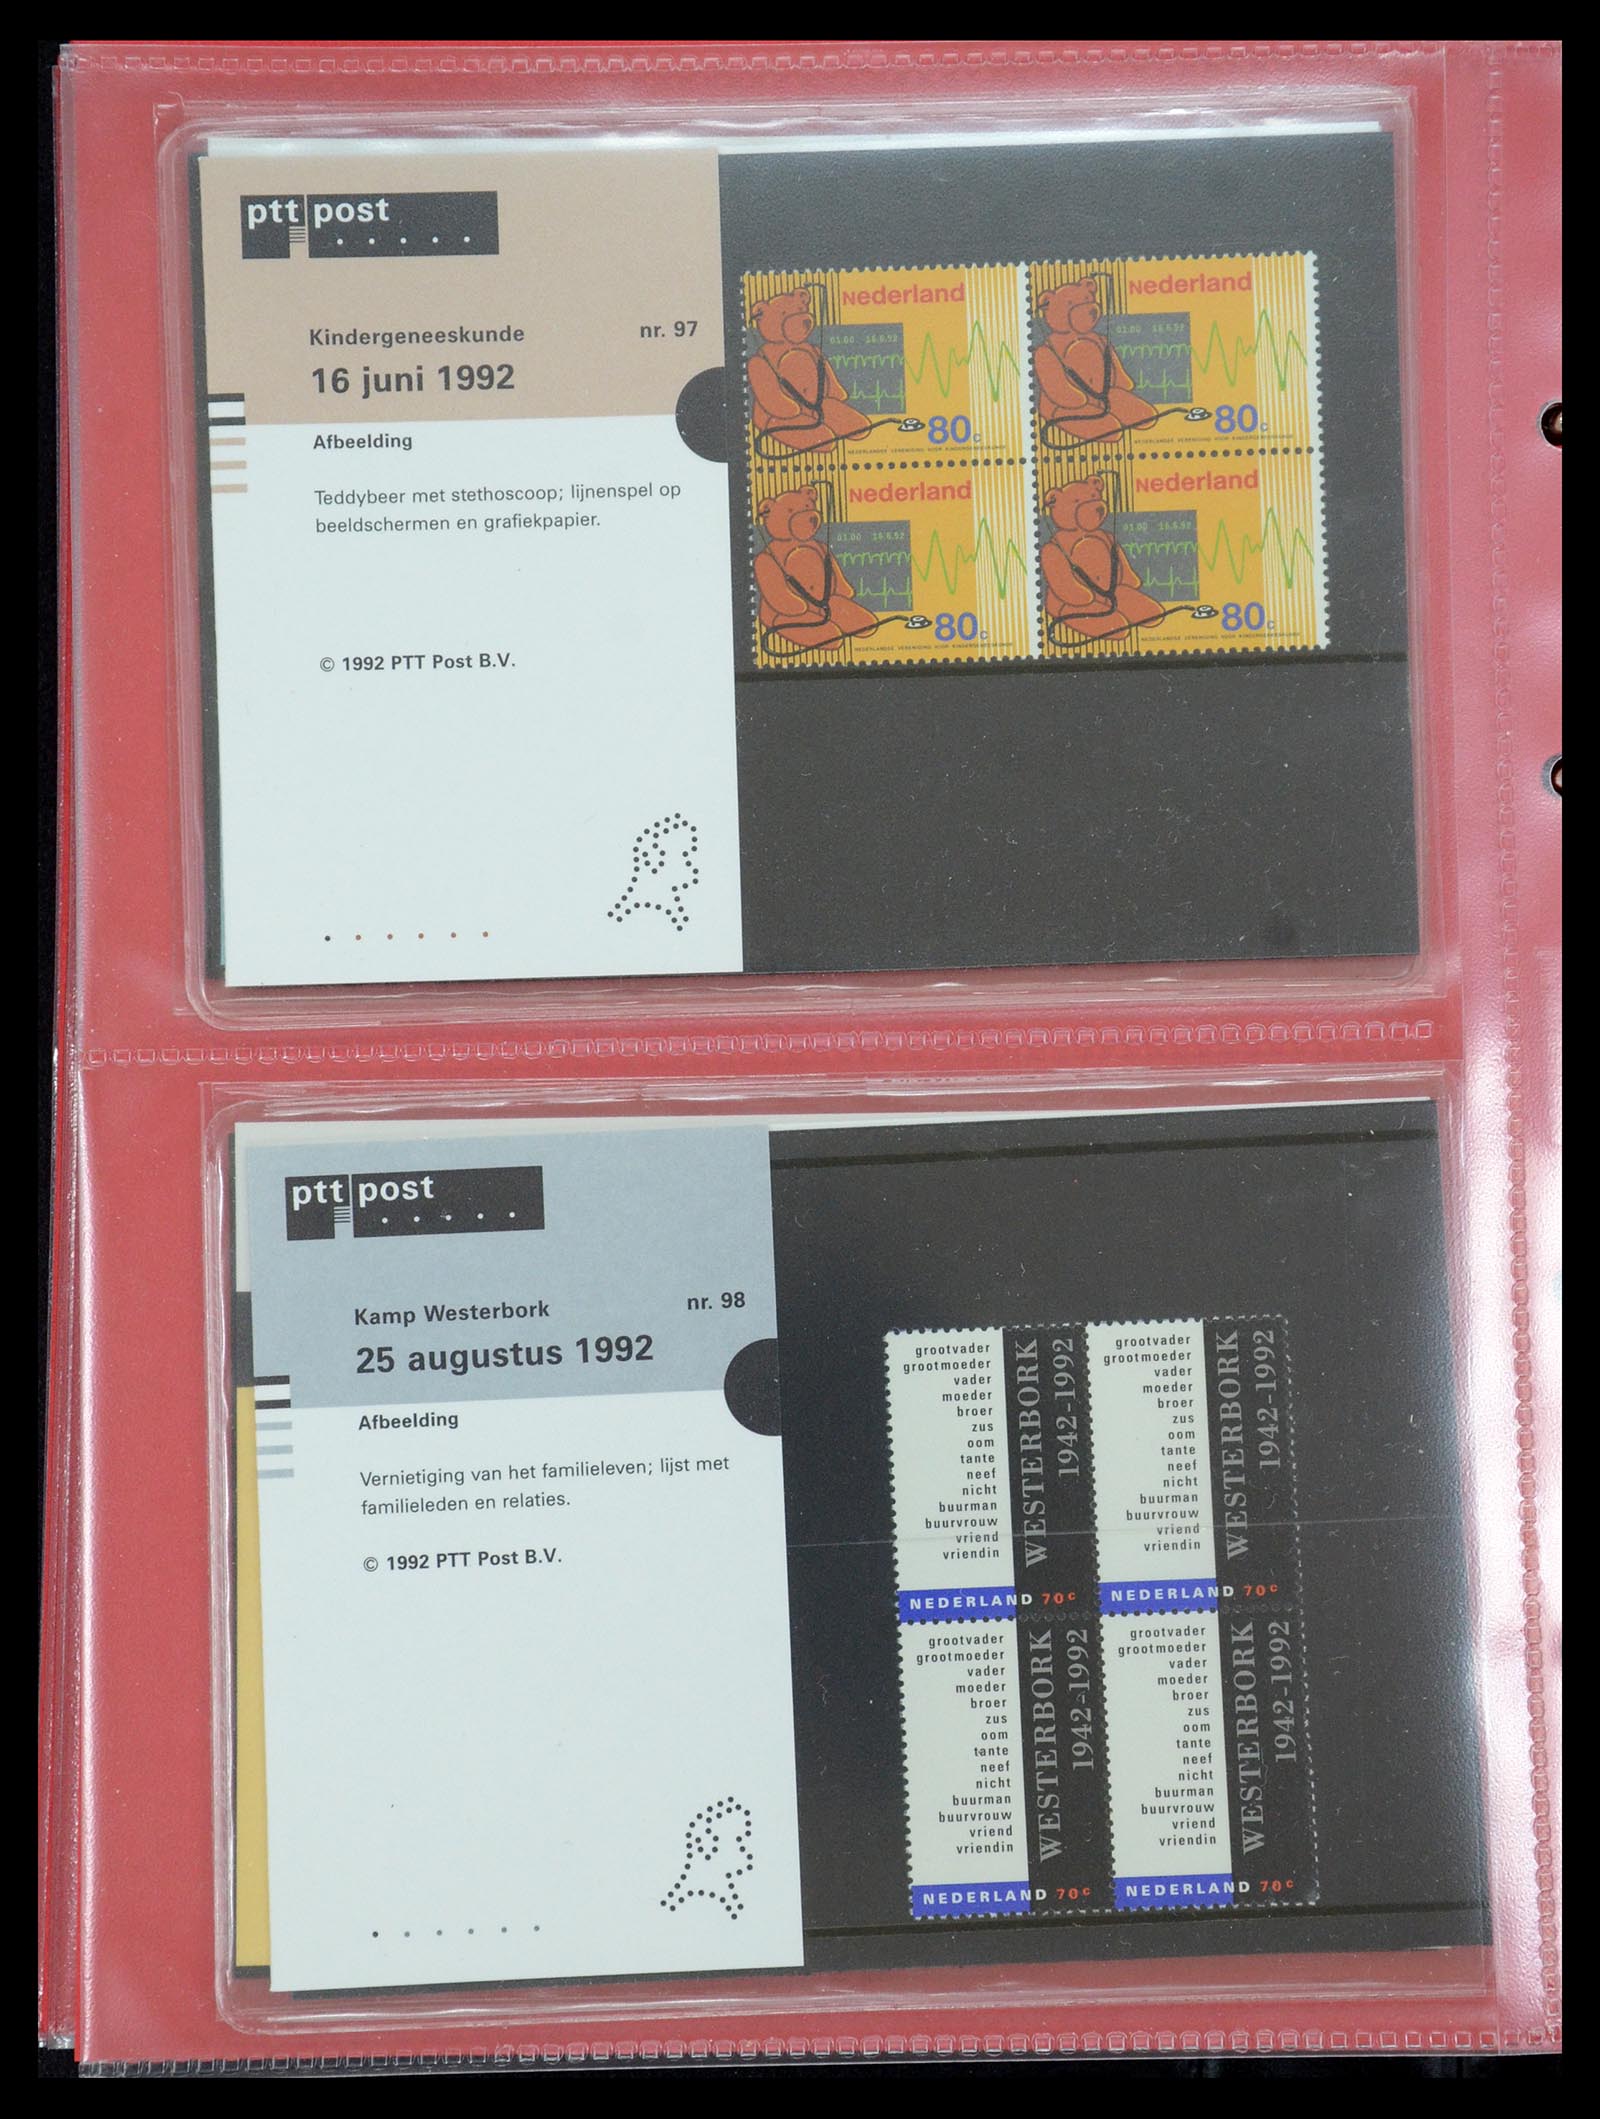 35692 050 - Stamp Collection 35692 Netherlands presentation packs 1982-2021!!